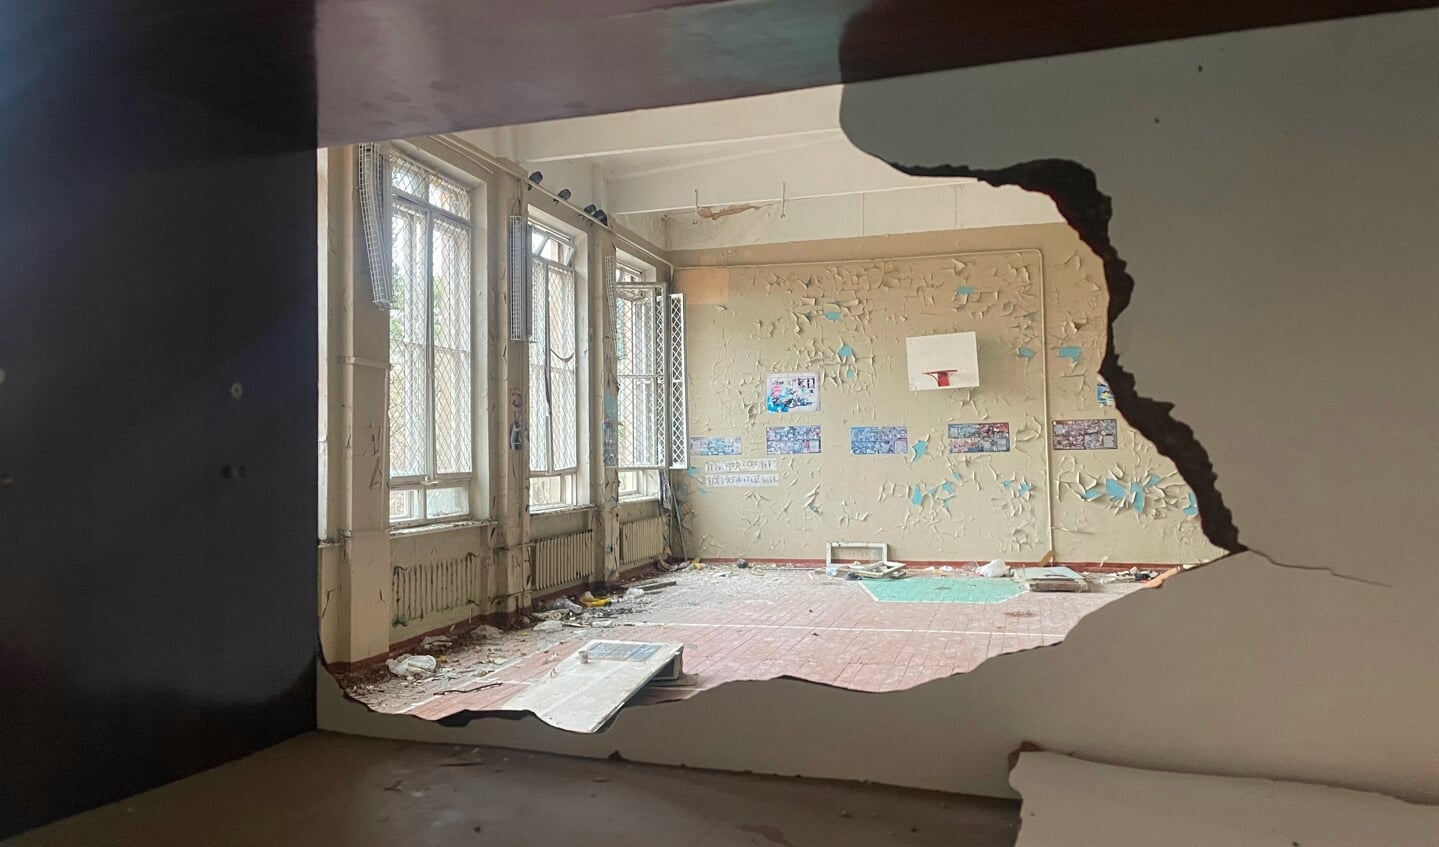 Sporen van vernielingen en plundering van een school in Chernihiv, Oekraïne.